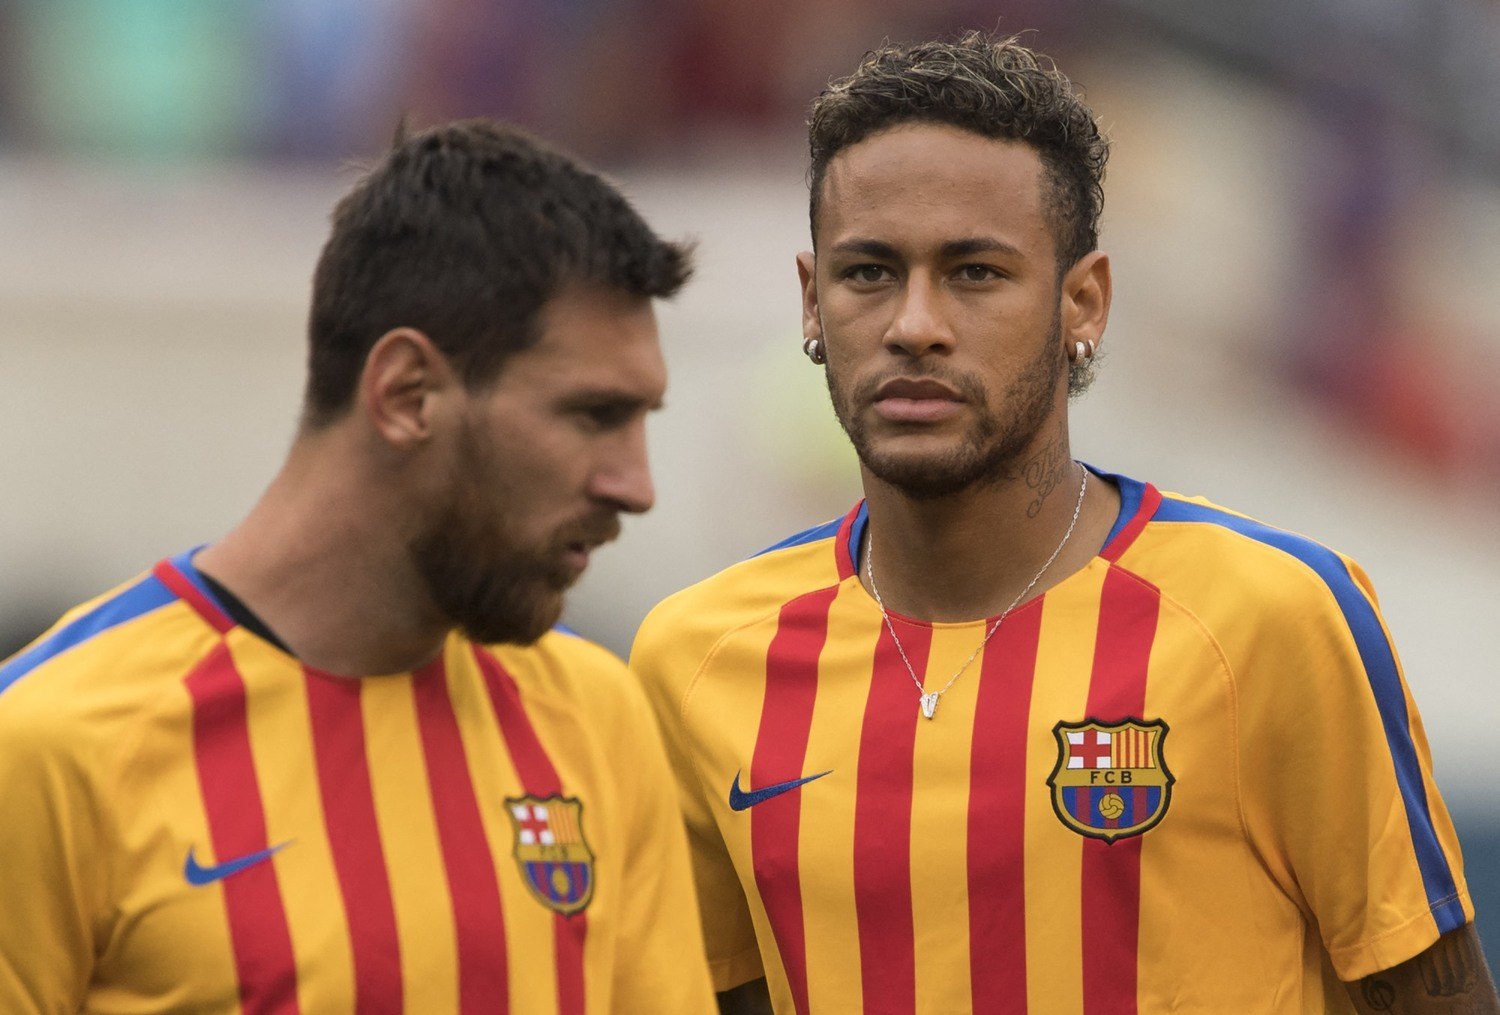 Com Messi, Neymar vira o favorito ao prêmio de melhor do mundo? - Fotos -  R7 Futebol